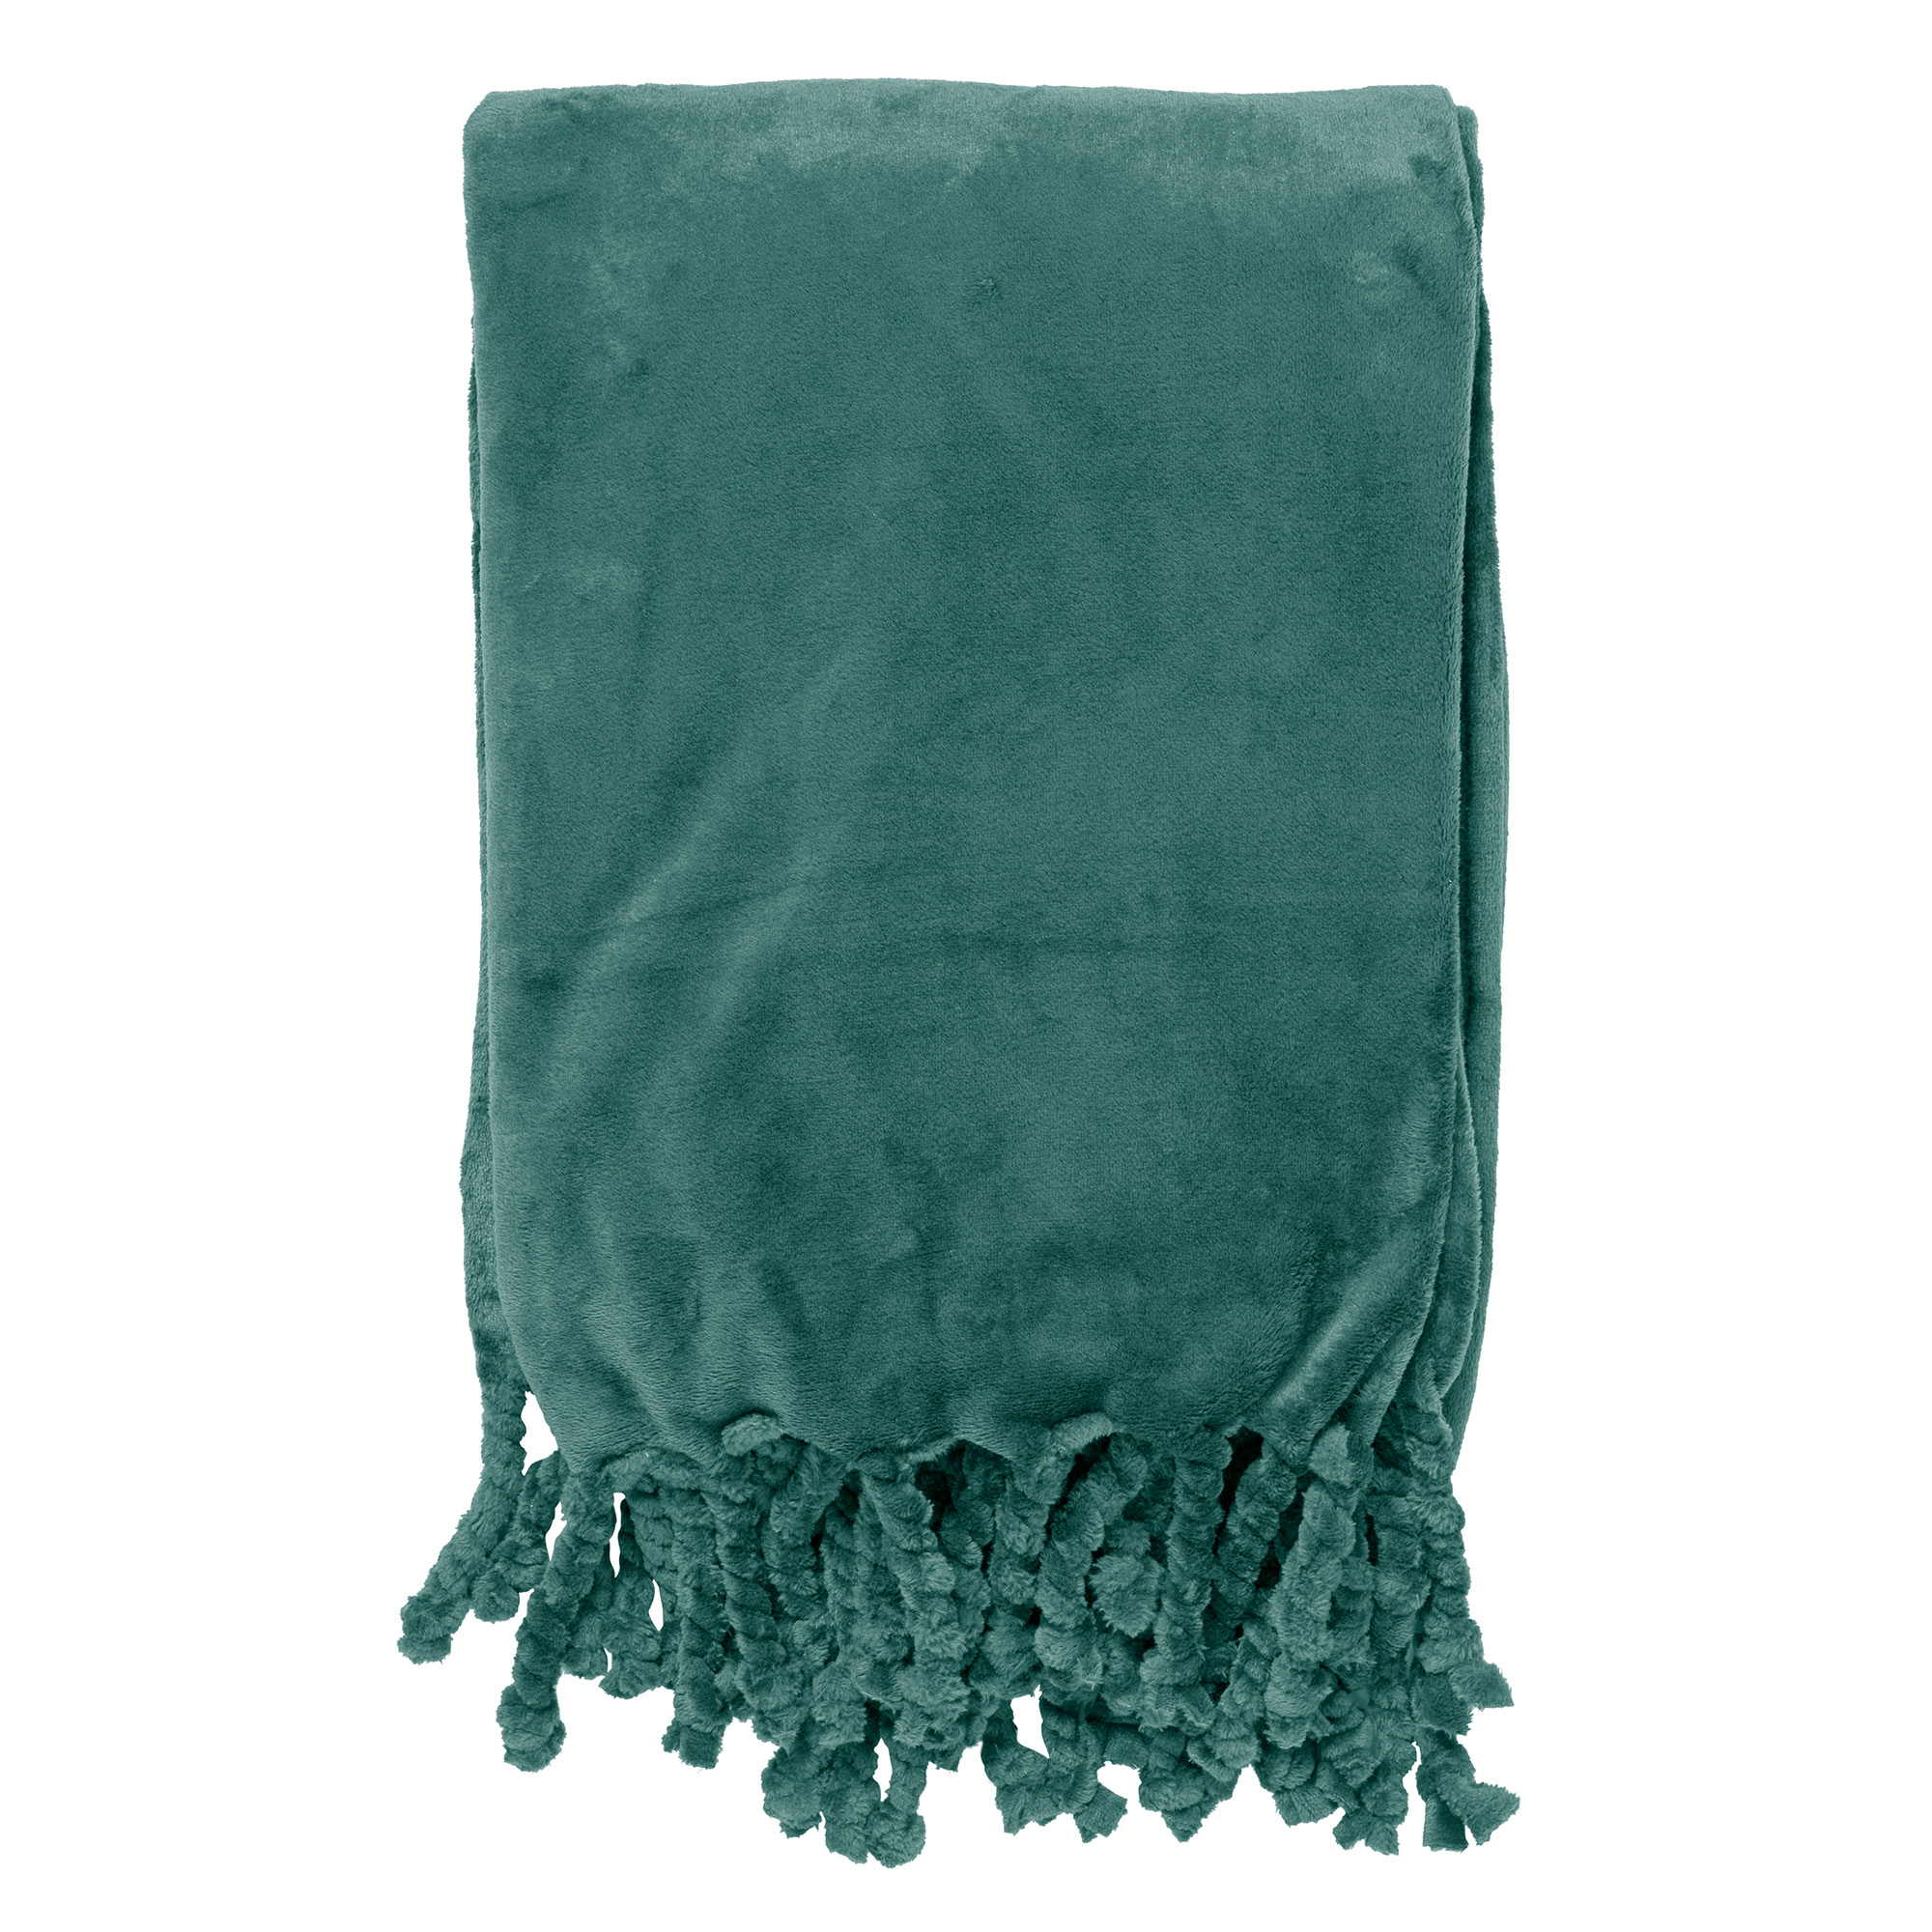 FLORIJN - Plaid van fleece 150x200 cm Sagebrush Green - groen - superzacht - met franjes